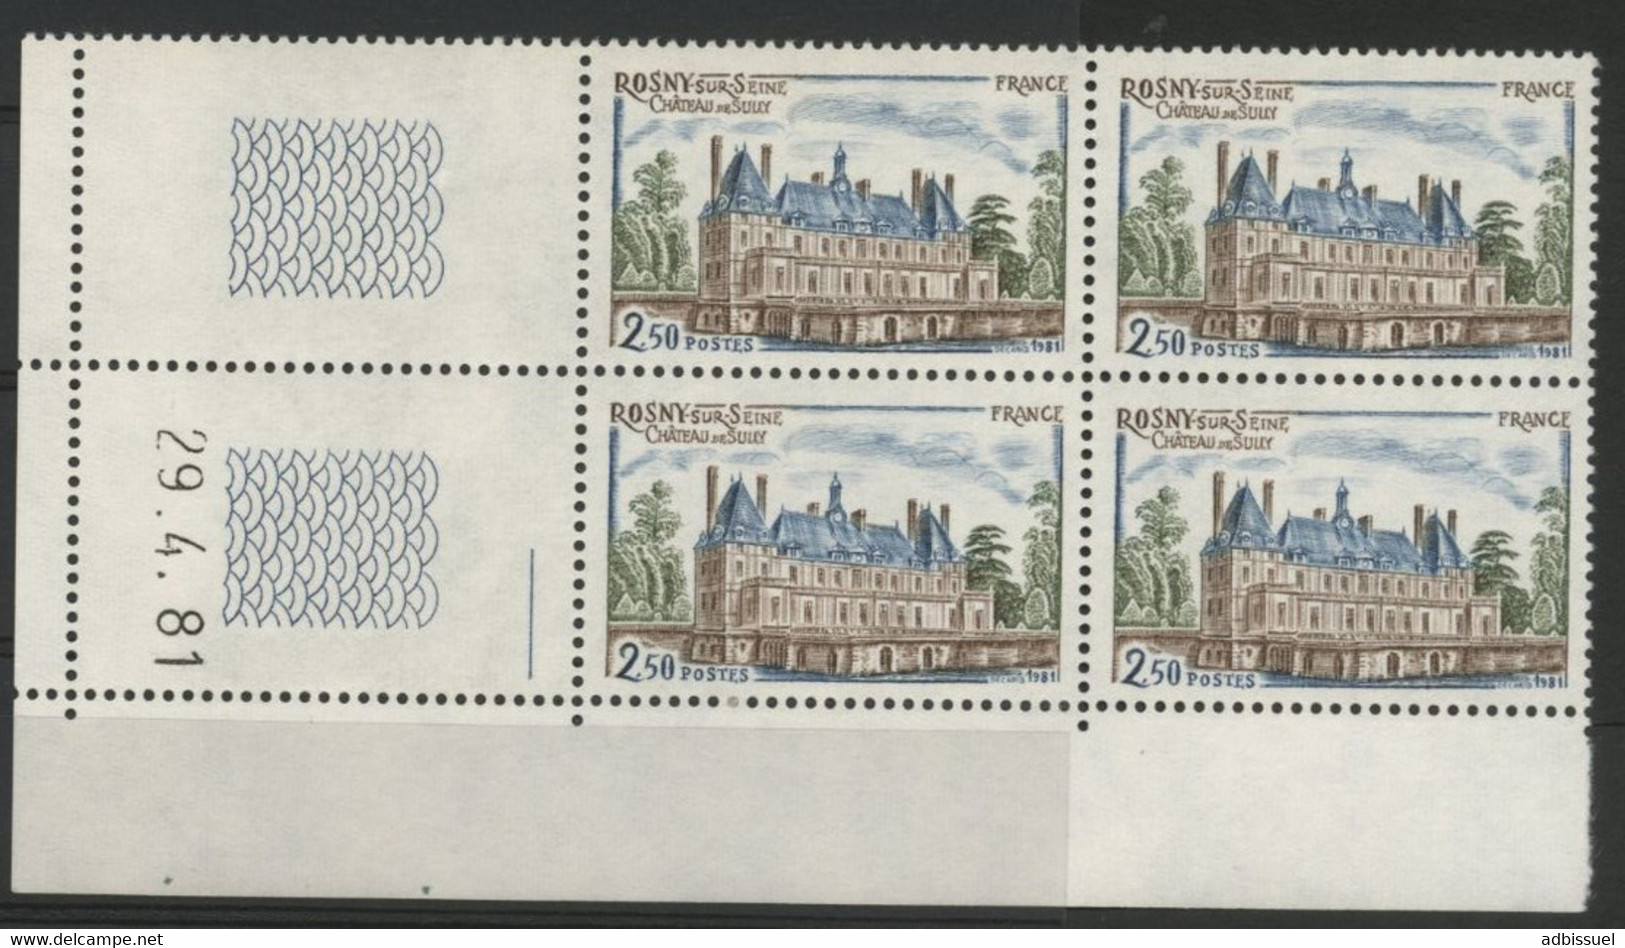 N° 2135 Château De Sully. Bloc De 4 Avec Coin Daté Du 29/4/81. Neuf ** (MNH). Vendu à La Valeur Faciale. TB - 1980-1989